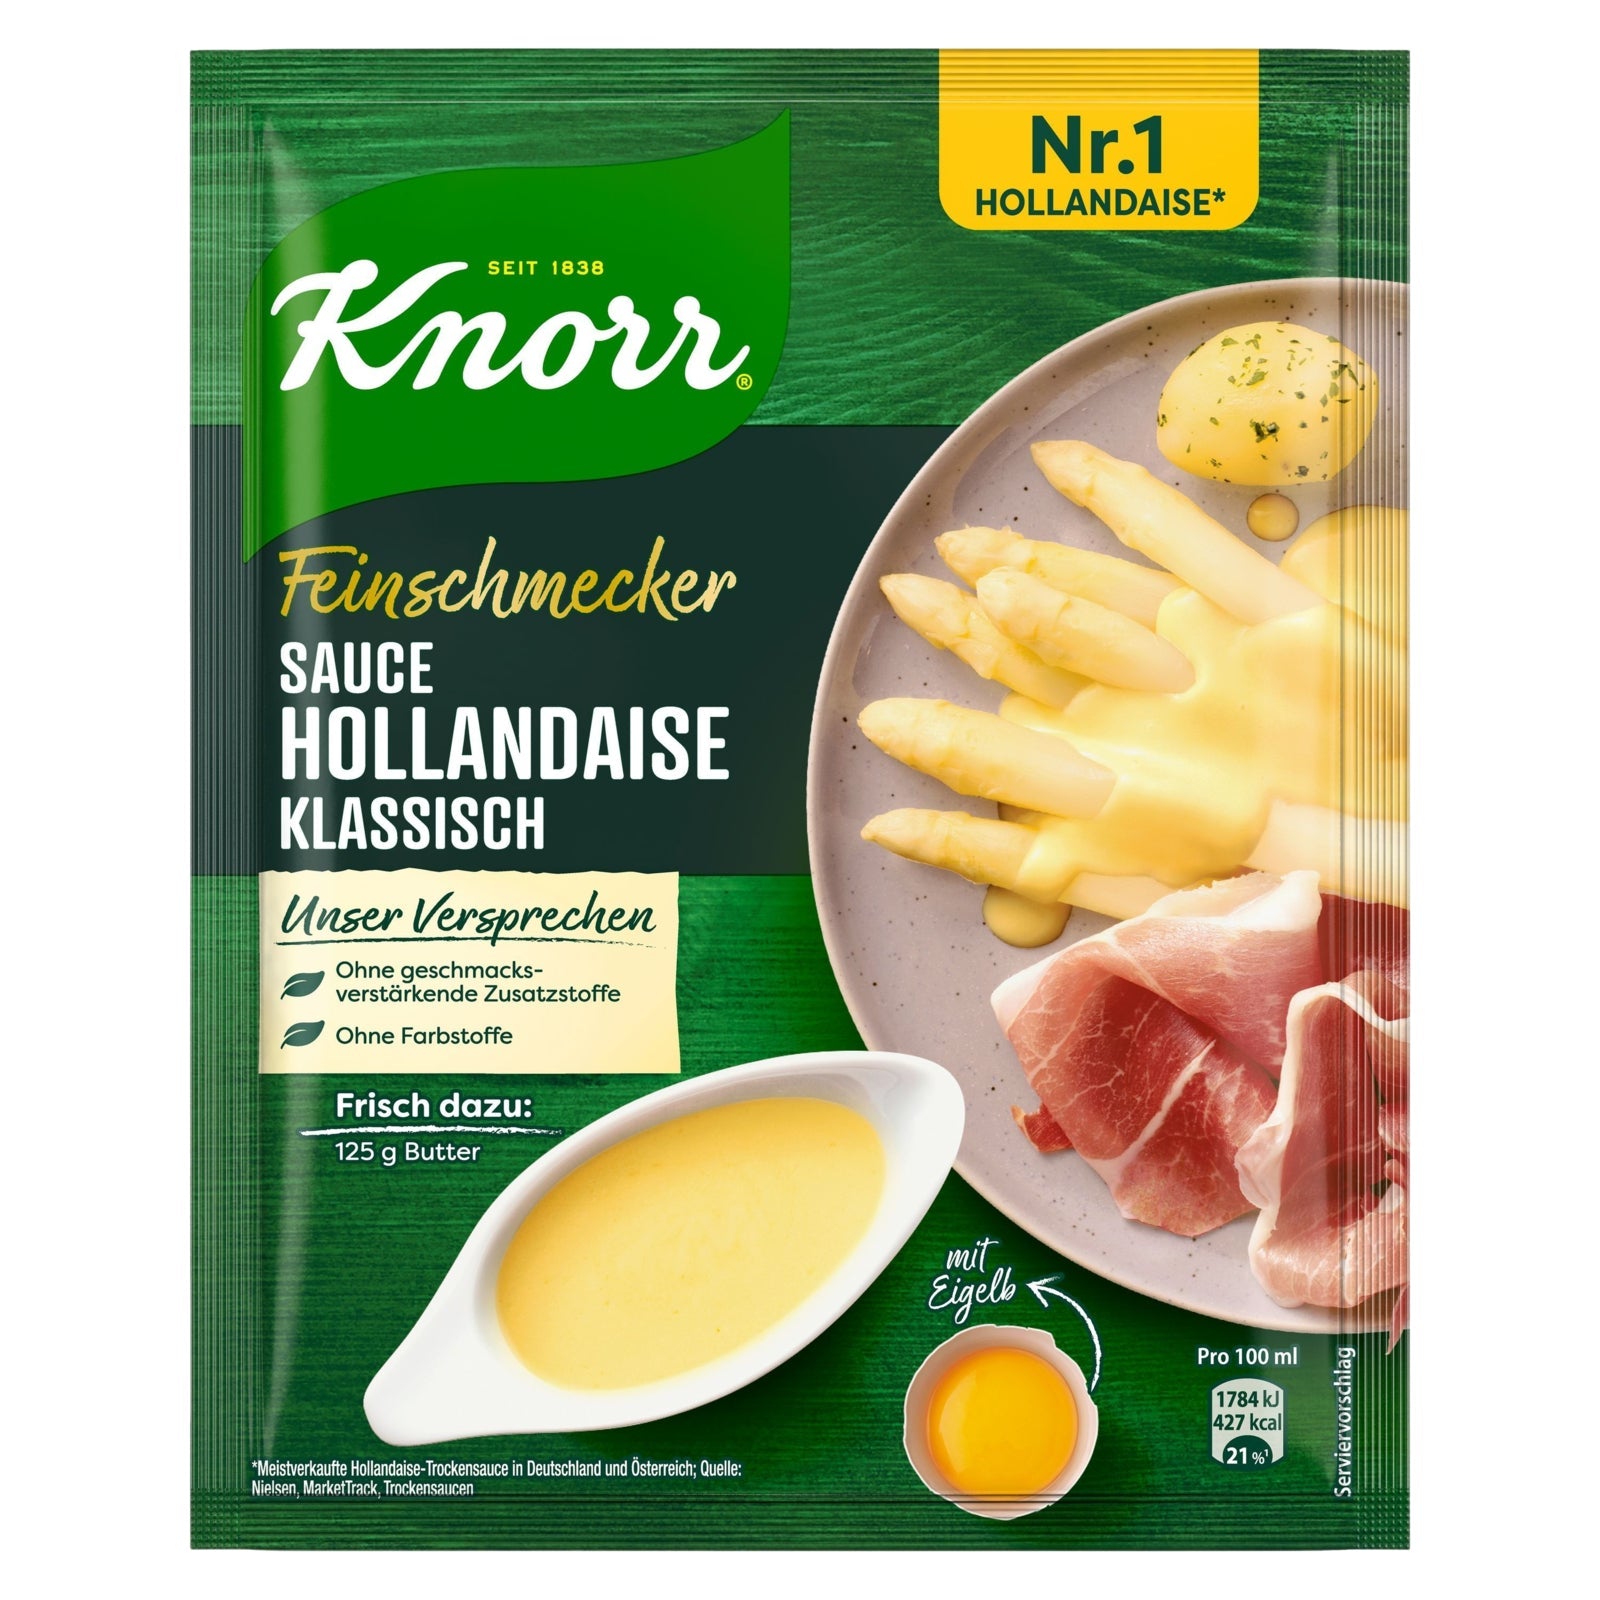 Feinschmecker Sauce Hollandaise Klassisch